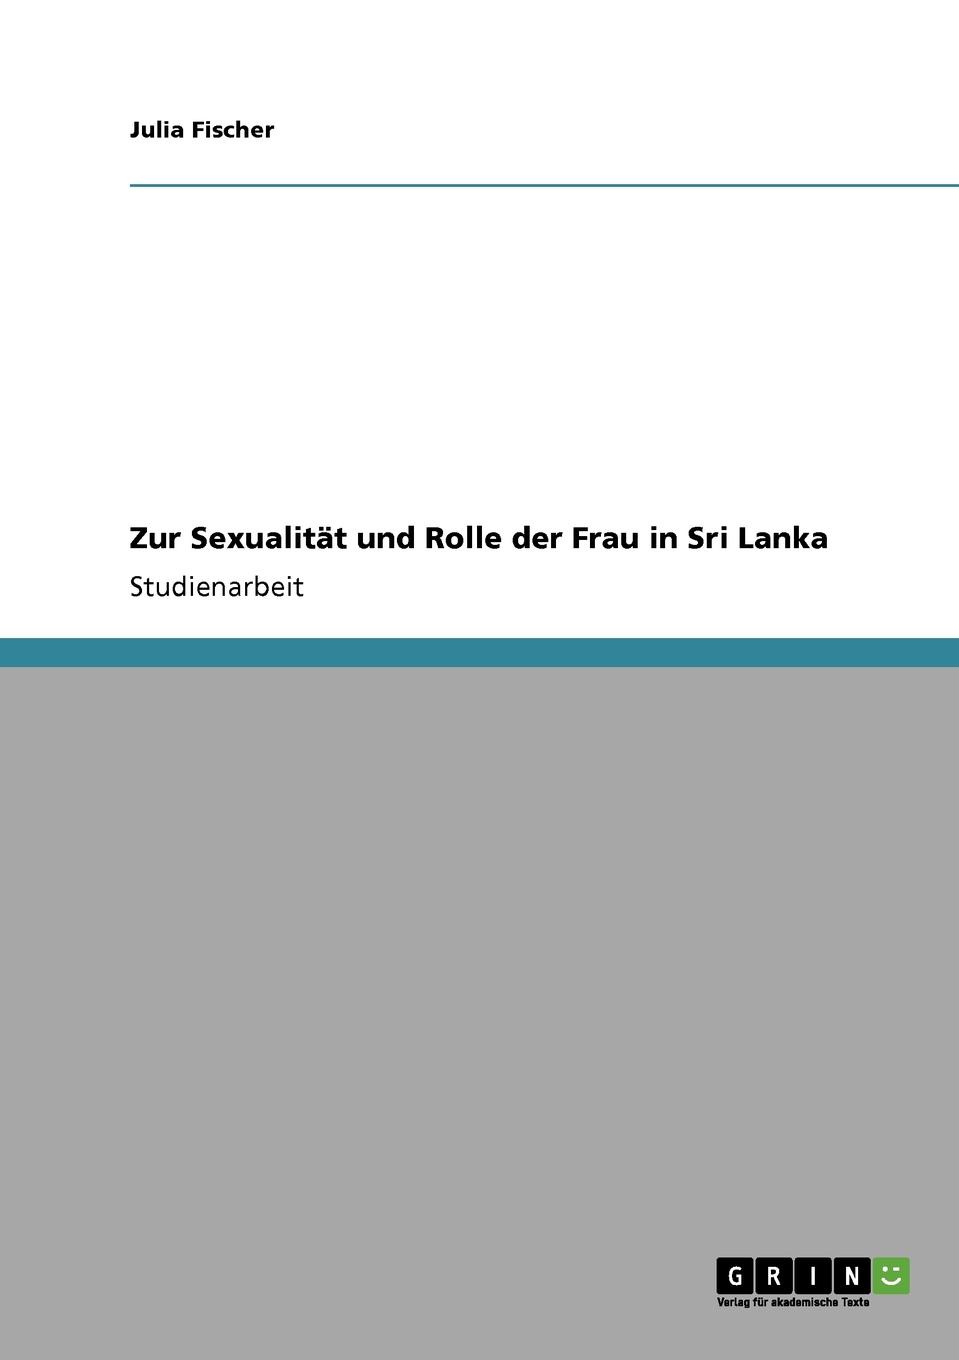 Zur Sexualitat und Rolle der Frau in Sri Lanka